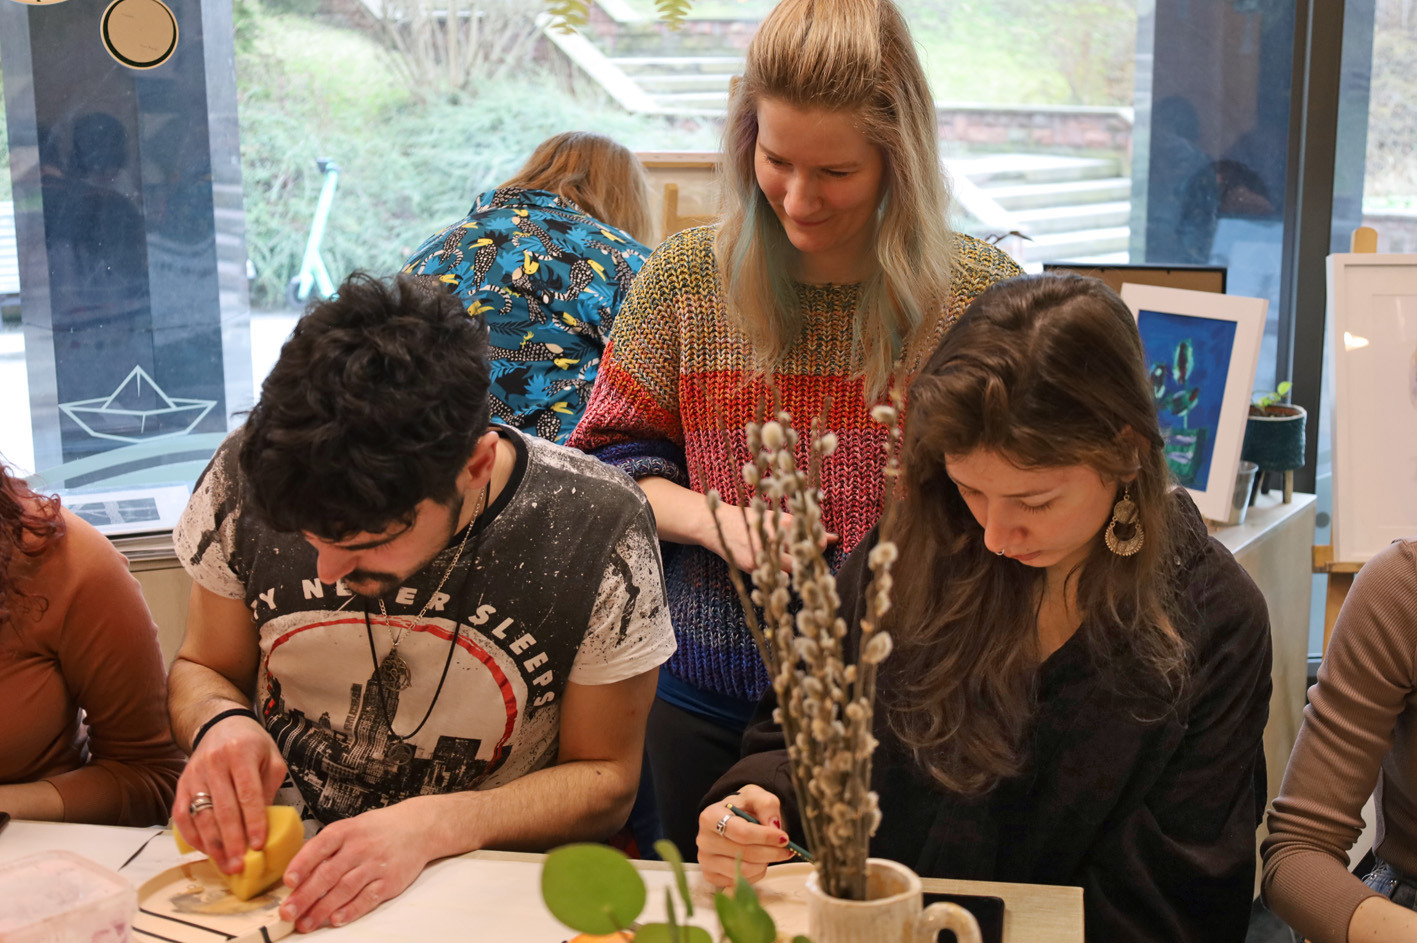 studenci siedzą wokół stołu warsztatowego i malują ceramiczne miseczki.